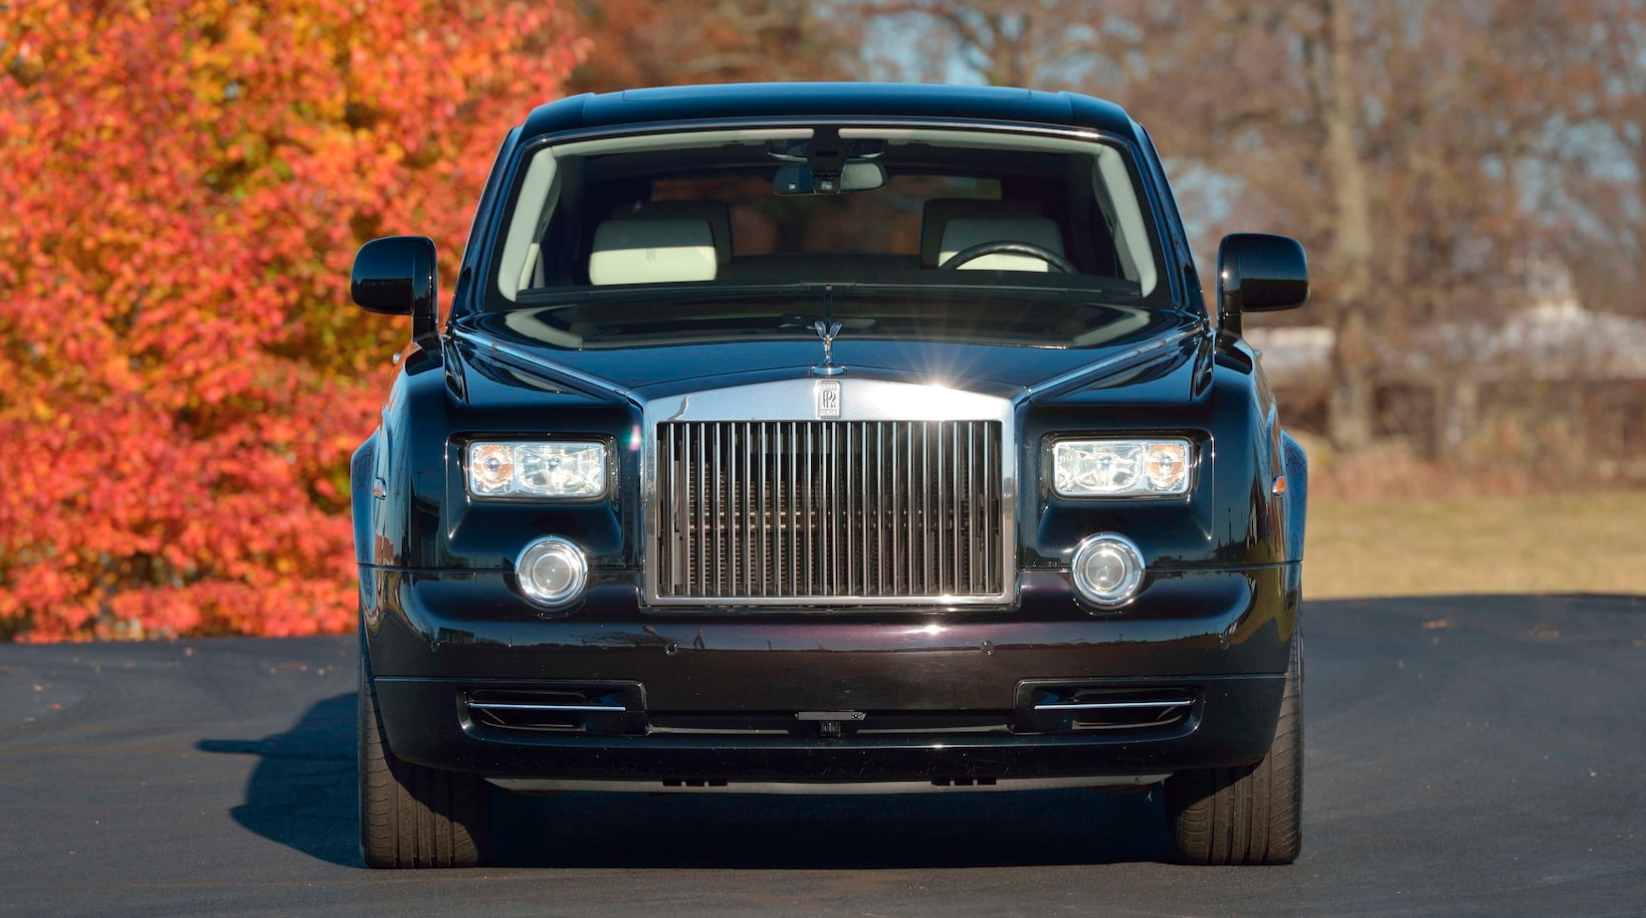 Rolls-Royce Phantom từng của Donald Trump sắp được bán đấu giá anh-chup-man-hinh-2021-01-07-luc-152540.png